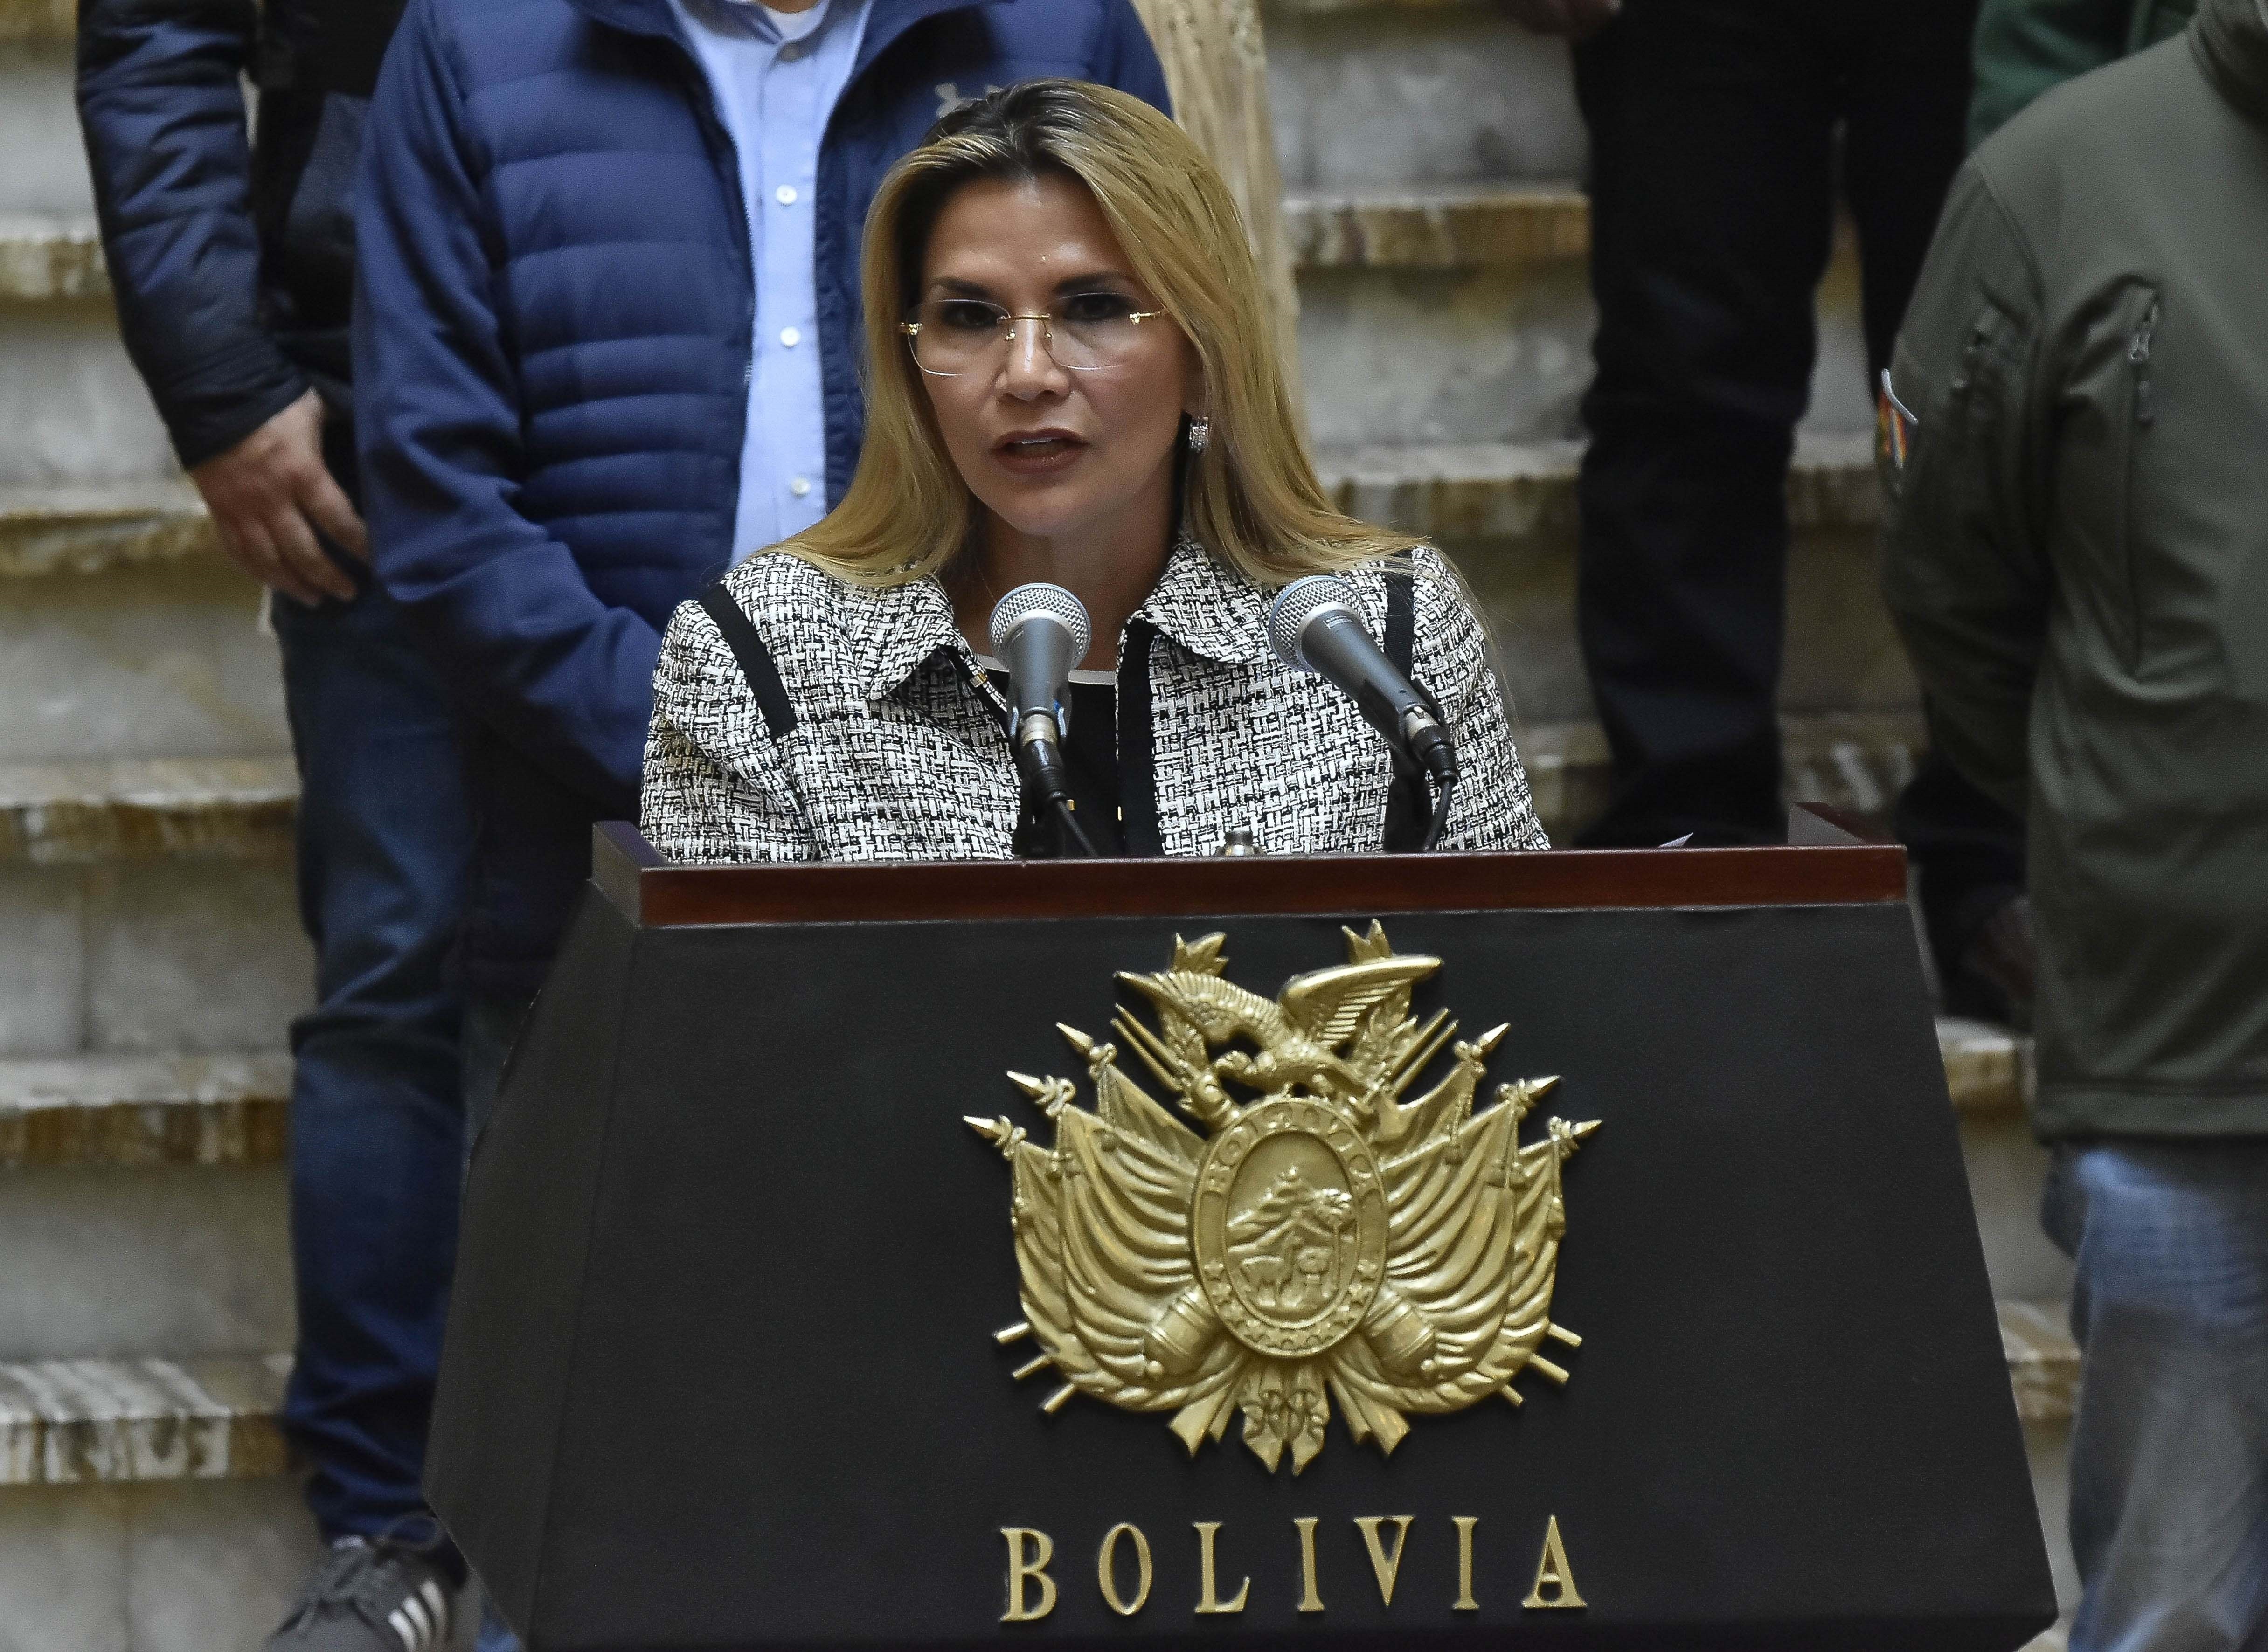 La ex presidenta interina de Bolivia, Jeanine Áñez, fue condenada a 10 años de prisión por el mismo caso en el que está siendo investigado Camacho. (FOTO: EFE)